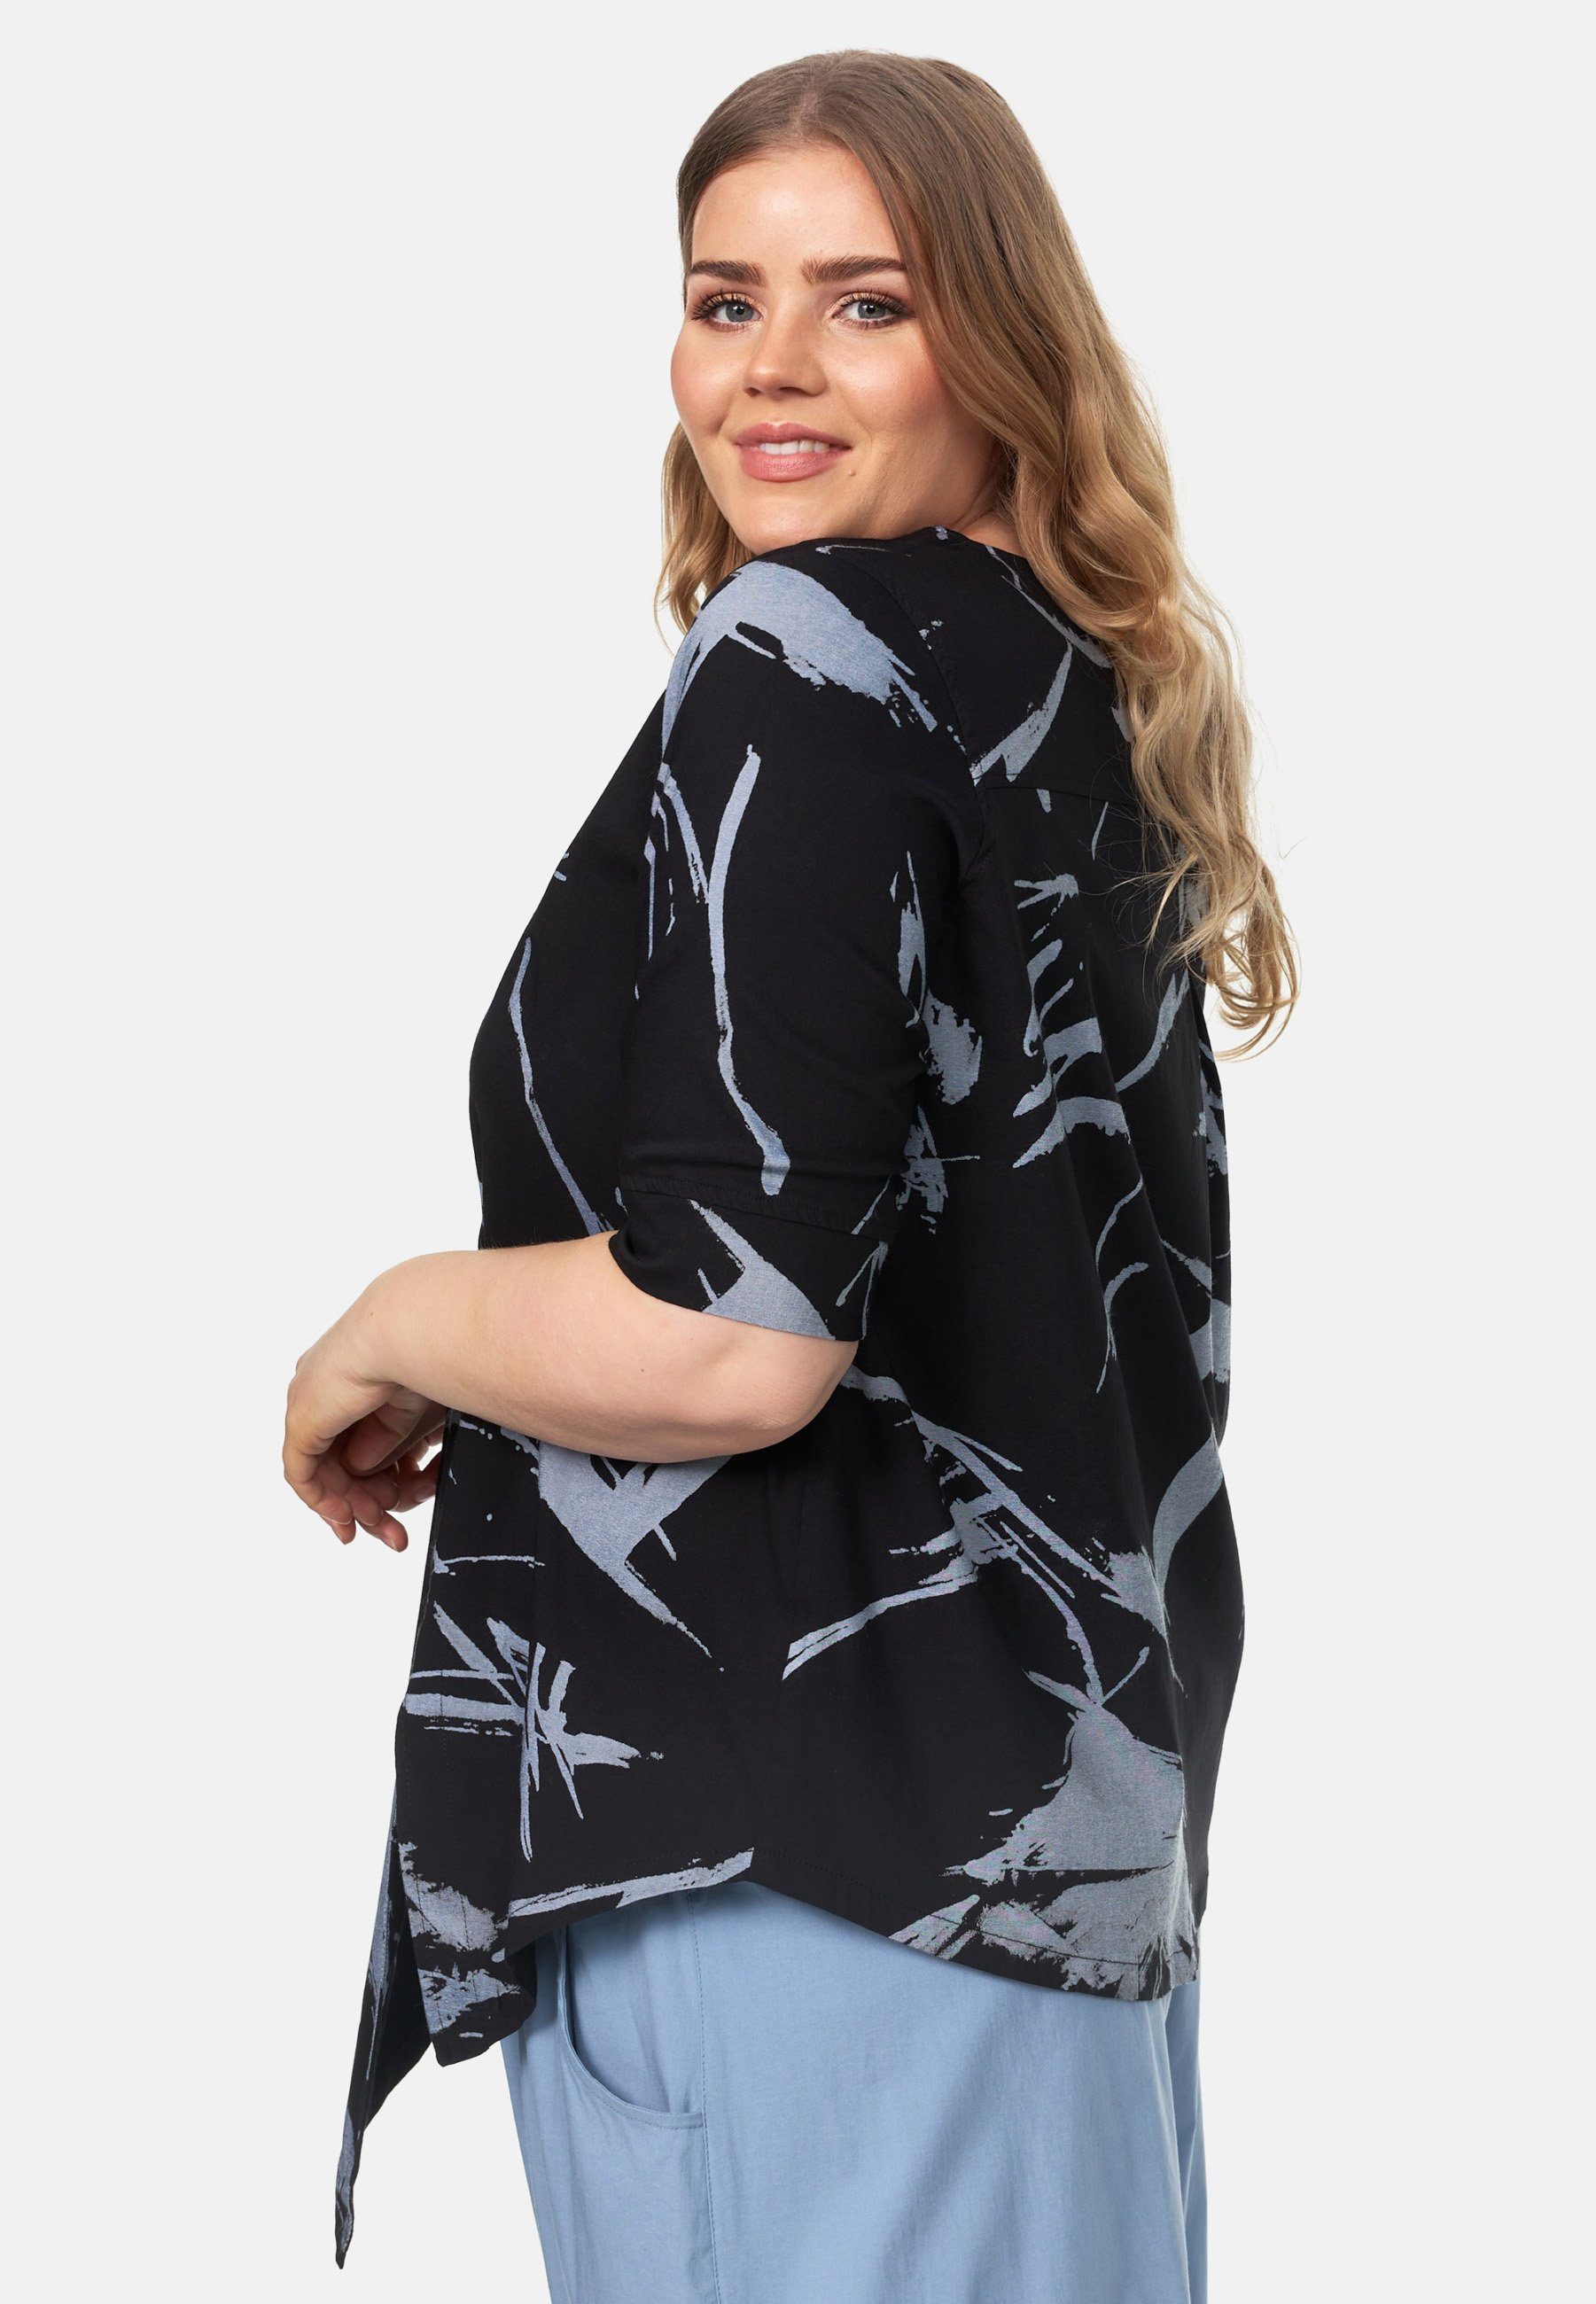 'Flora' A-Line Tunikashirt Schwarz Saum asymmetrischem Kekoo in Shirt Tunika mit Muster